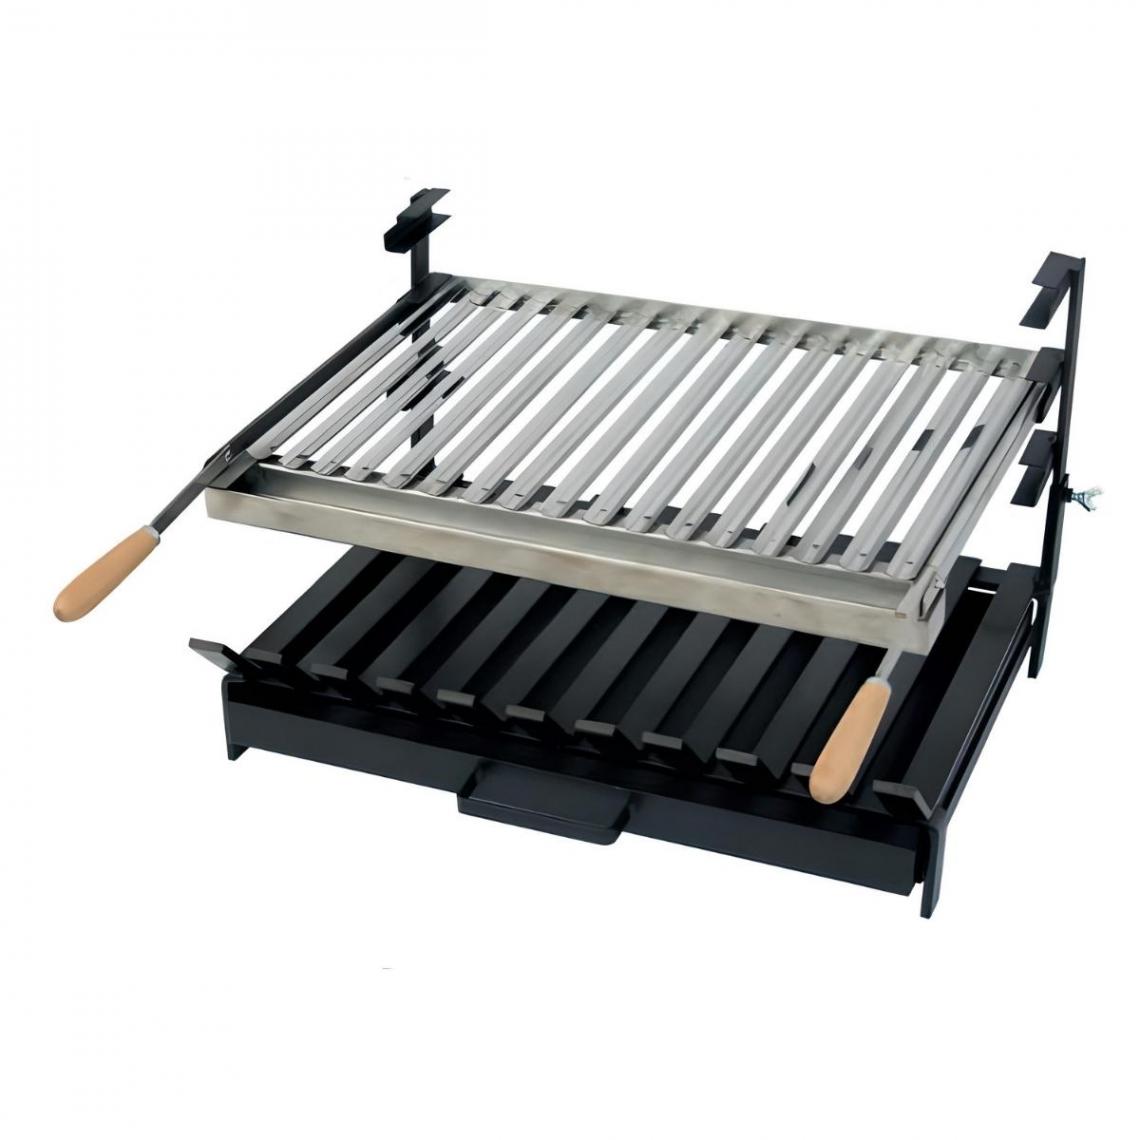 Visiodirect - Grille à rôtir avec tiroir et récupérateur de graisse en Inox coloris Noir -50 x 45 x 40cm - Accessoires barbecue